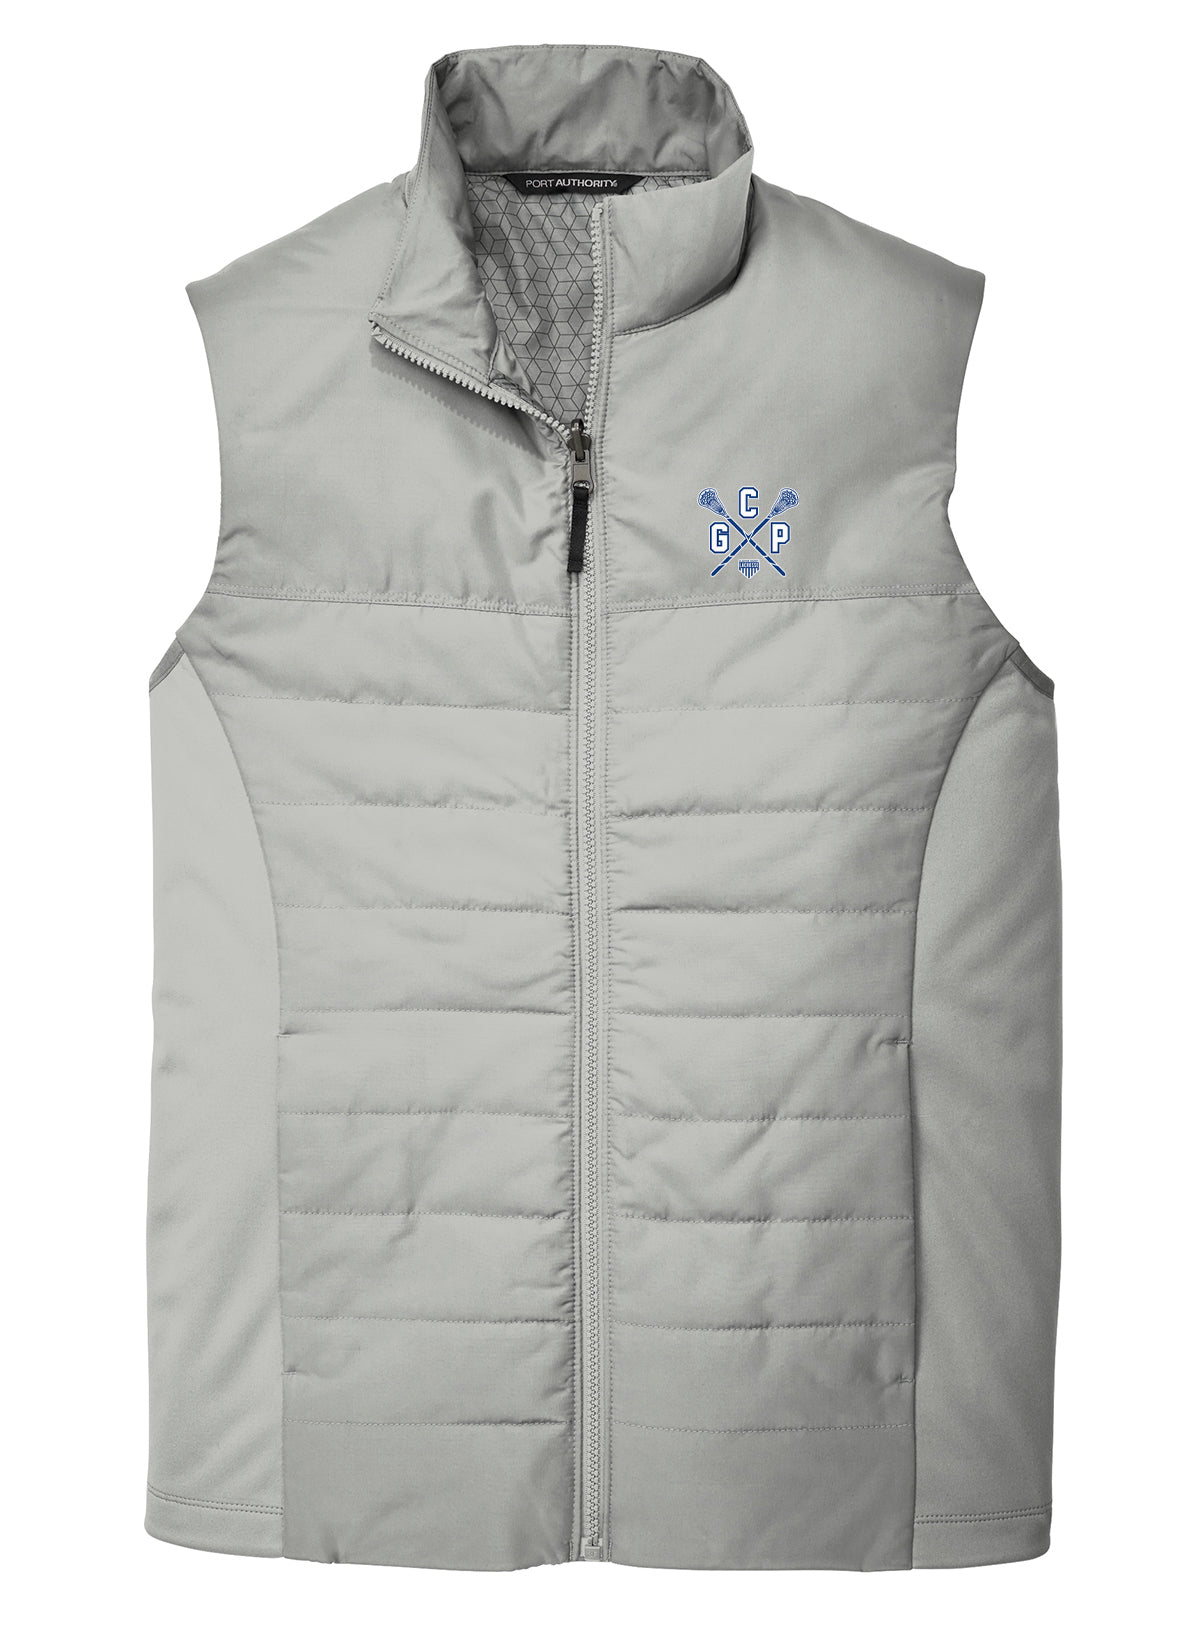 GCP Lacrosse Gusty Grey Vest